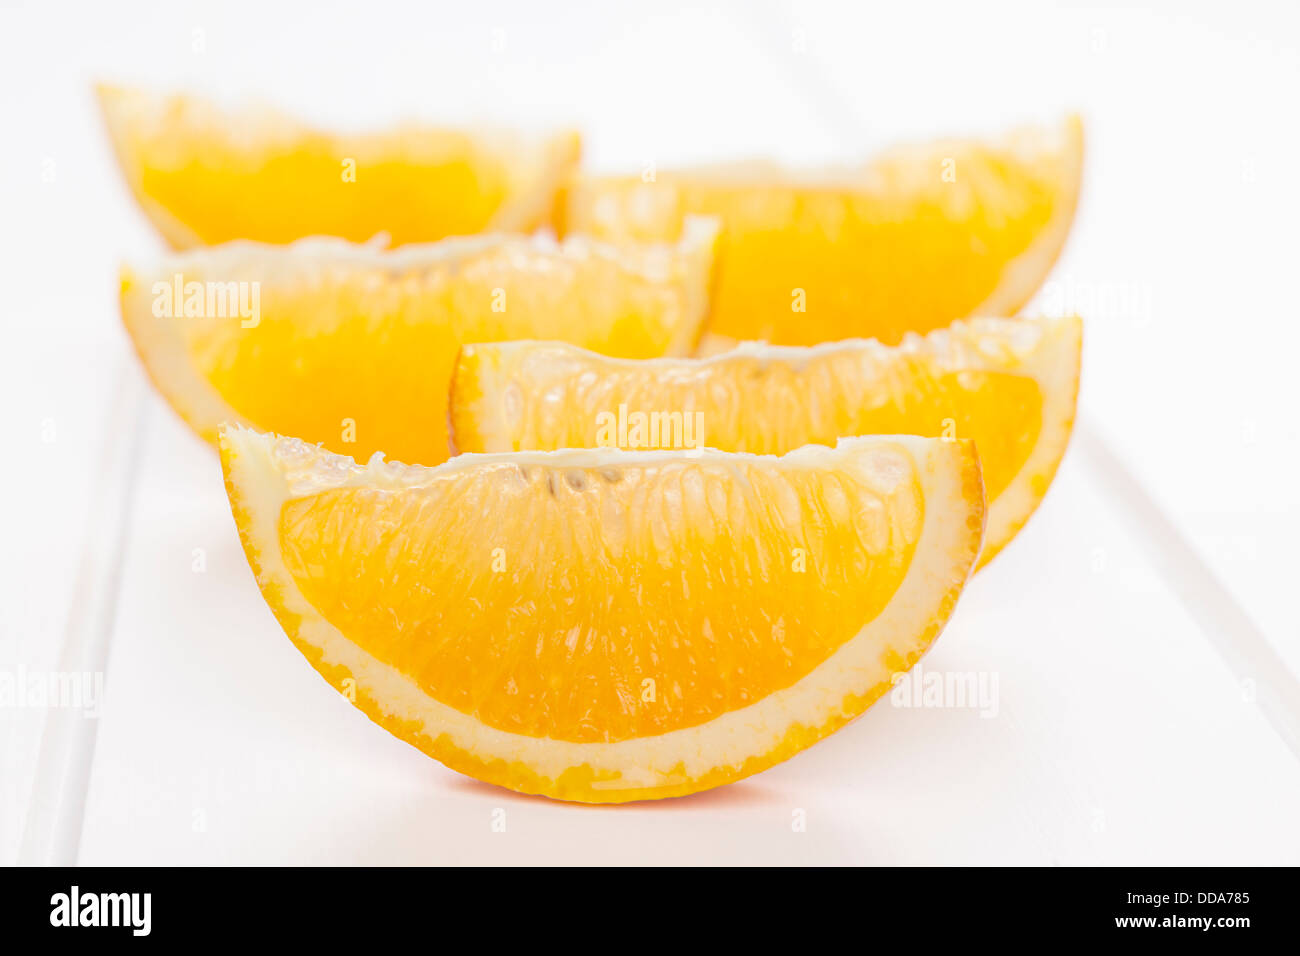 Orange Wedges on White Background - orange wedges or slices on a white background with soft shadows. Stock Photo